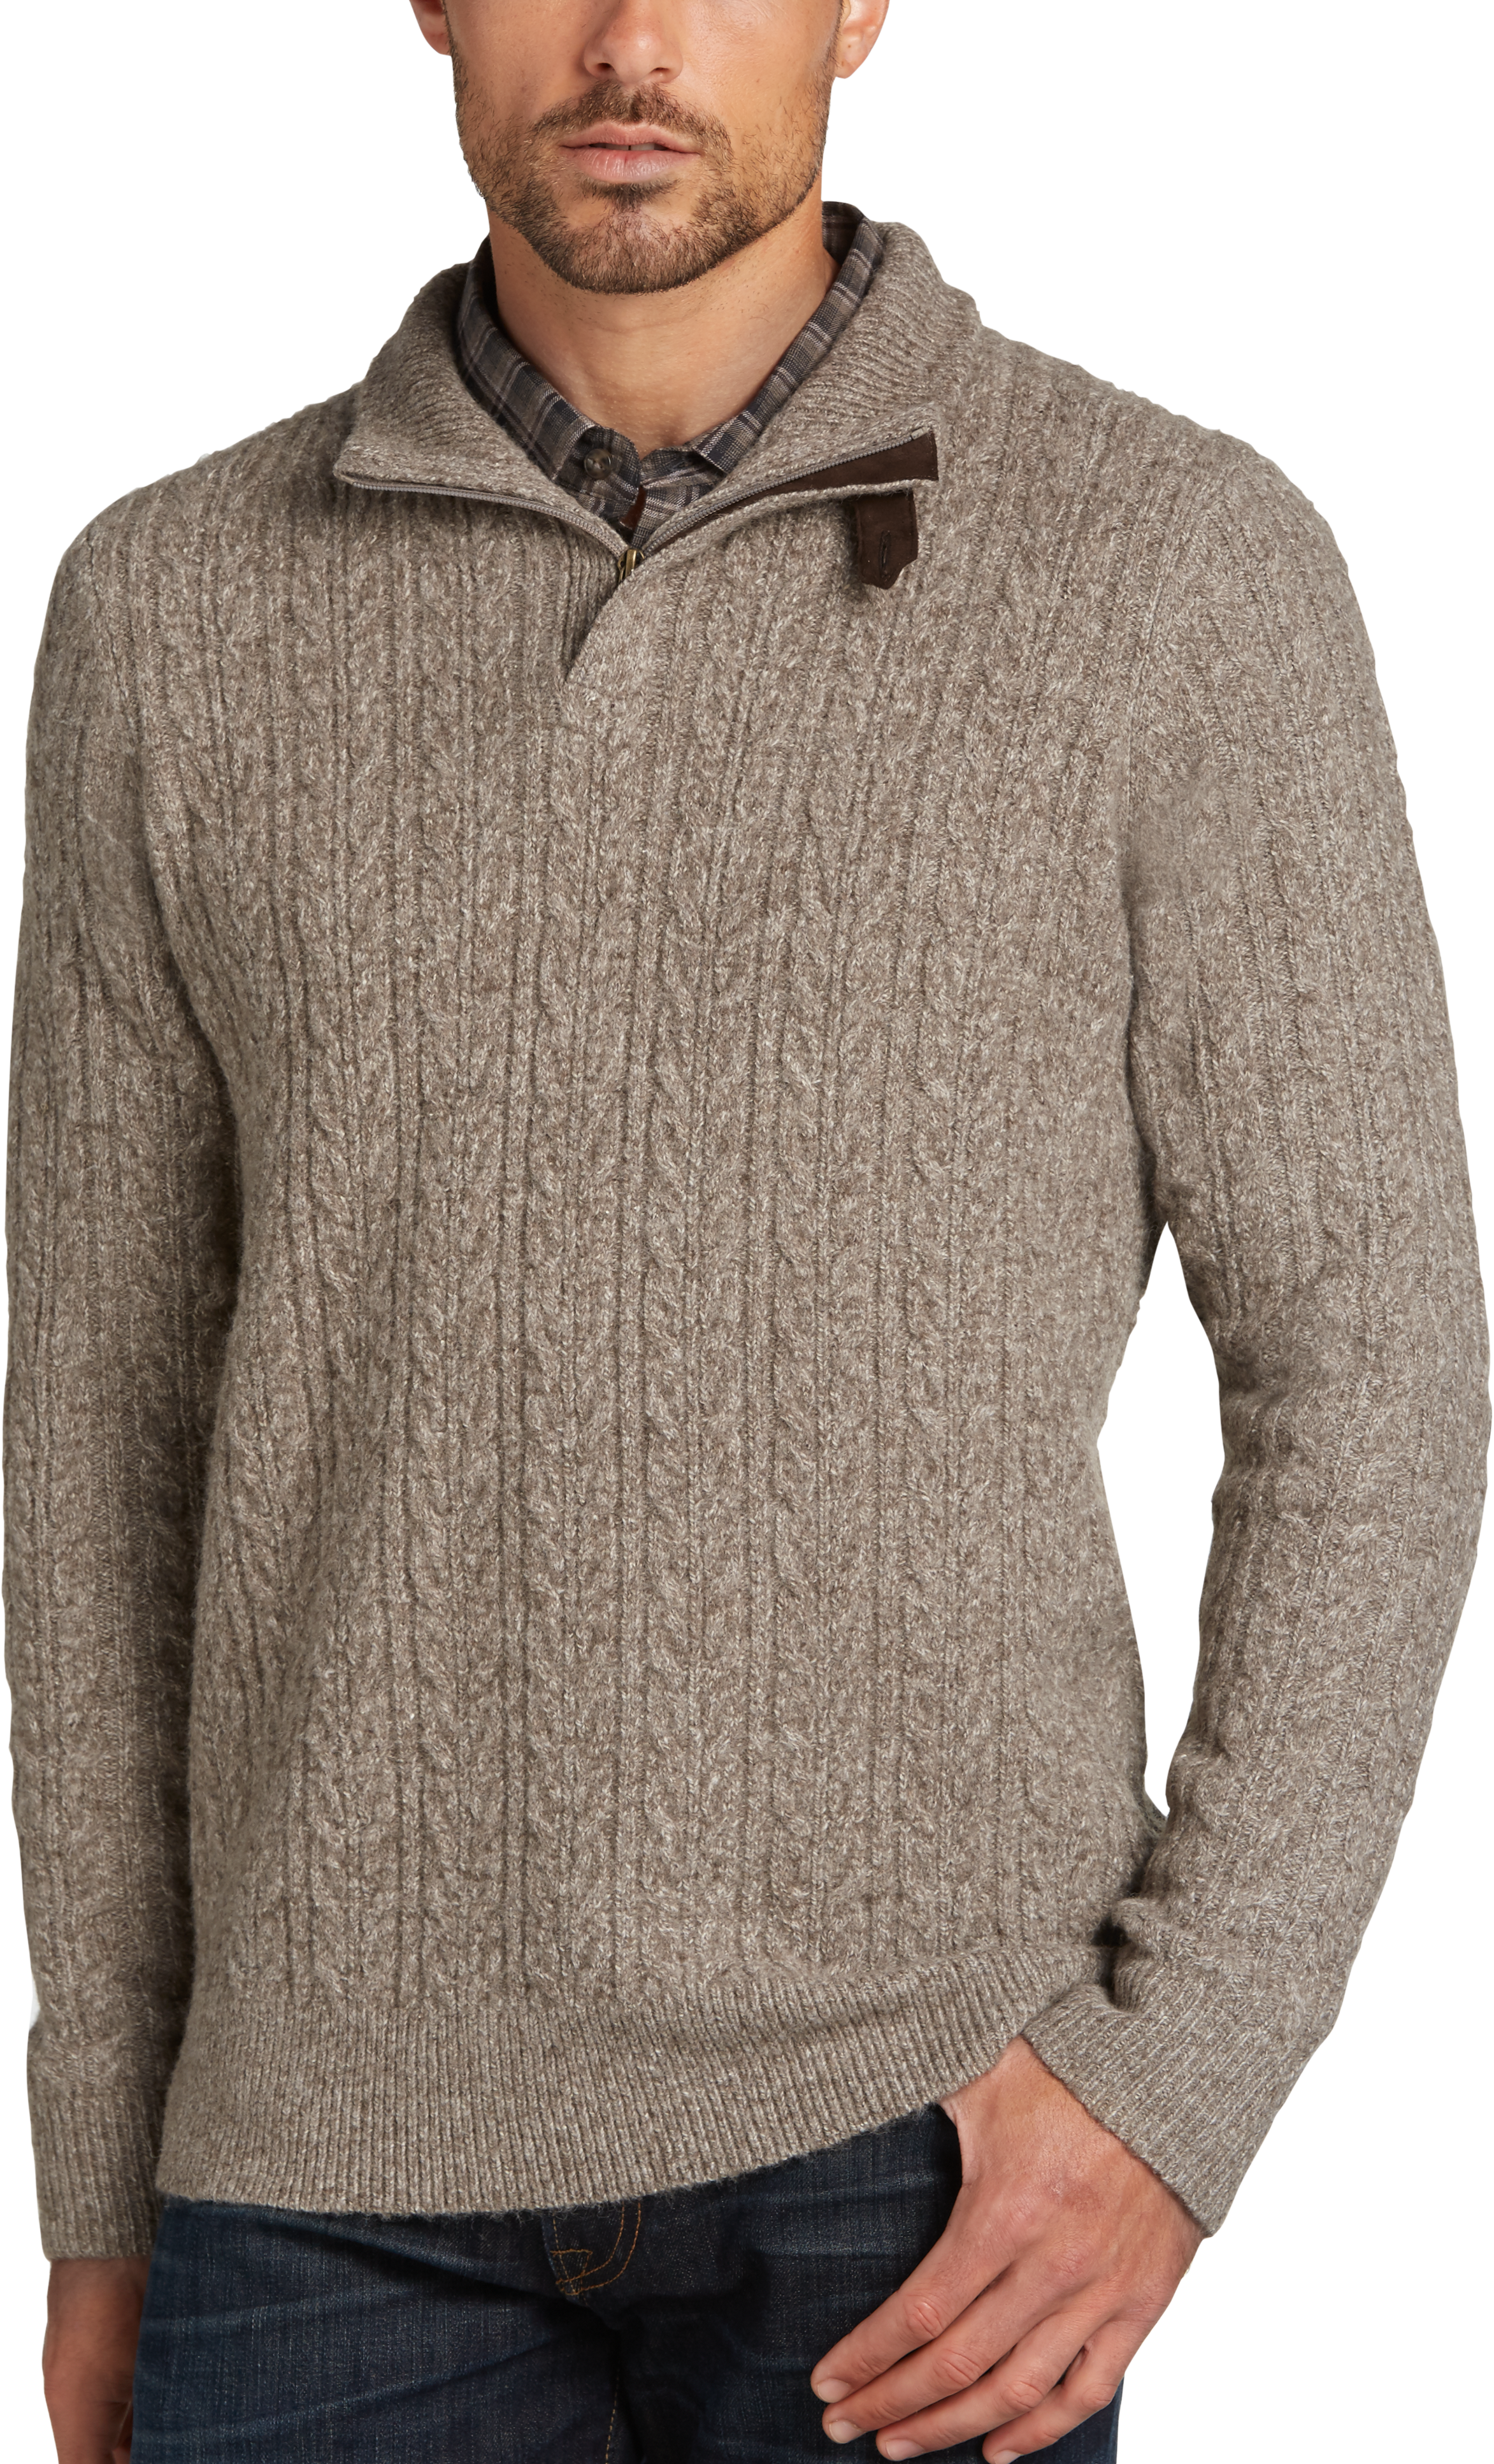 Joseph Abboud Natural 1/4 Zip Sweater - Men's Sale | Men's Wearhouse